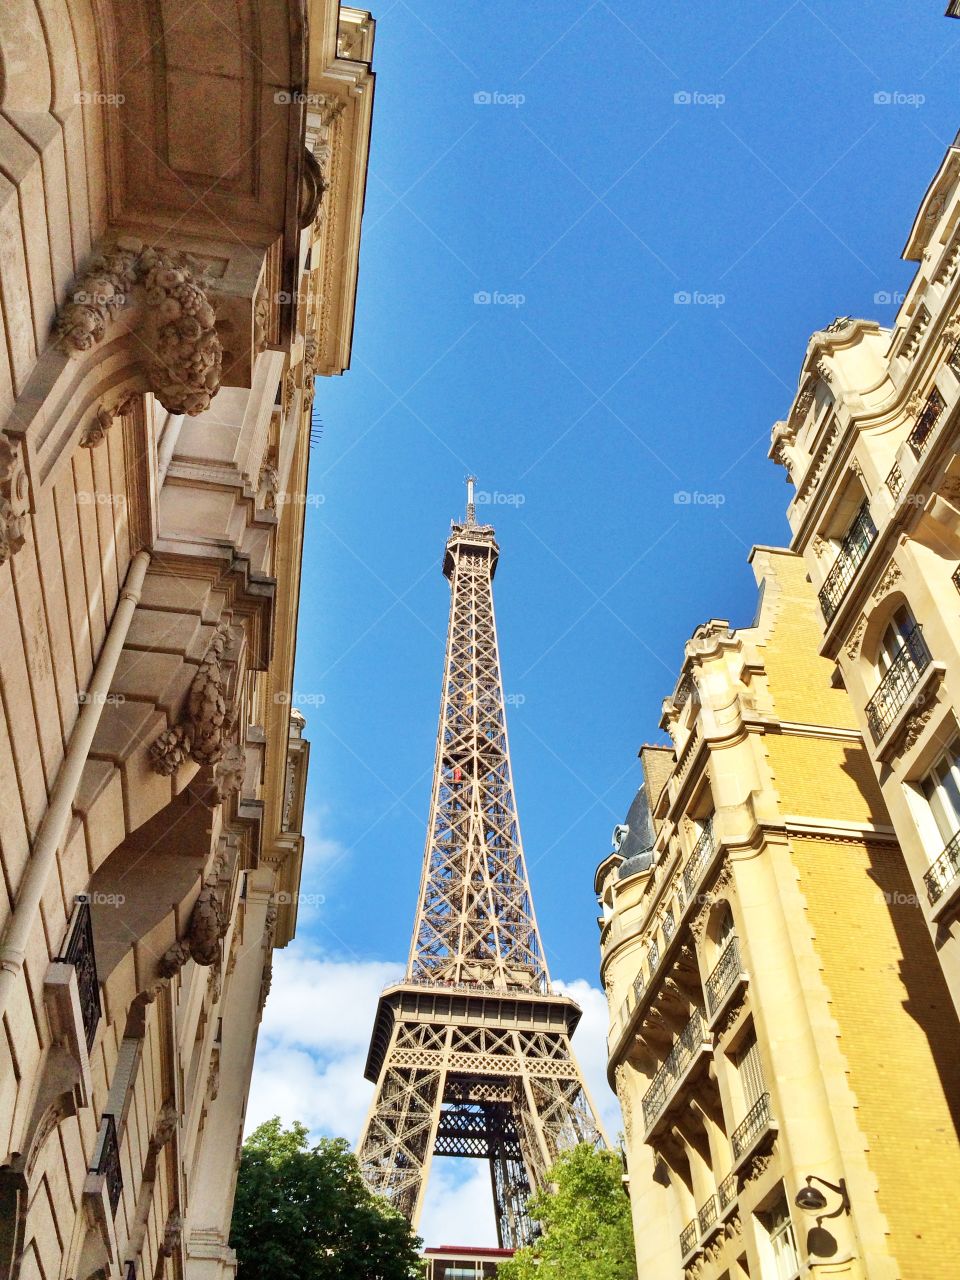 Eiffel Tower in Paris. Eiffel Tower in Paris